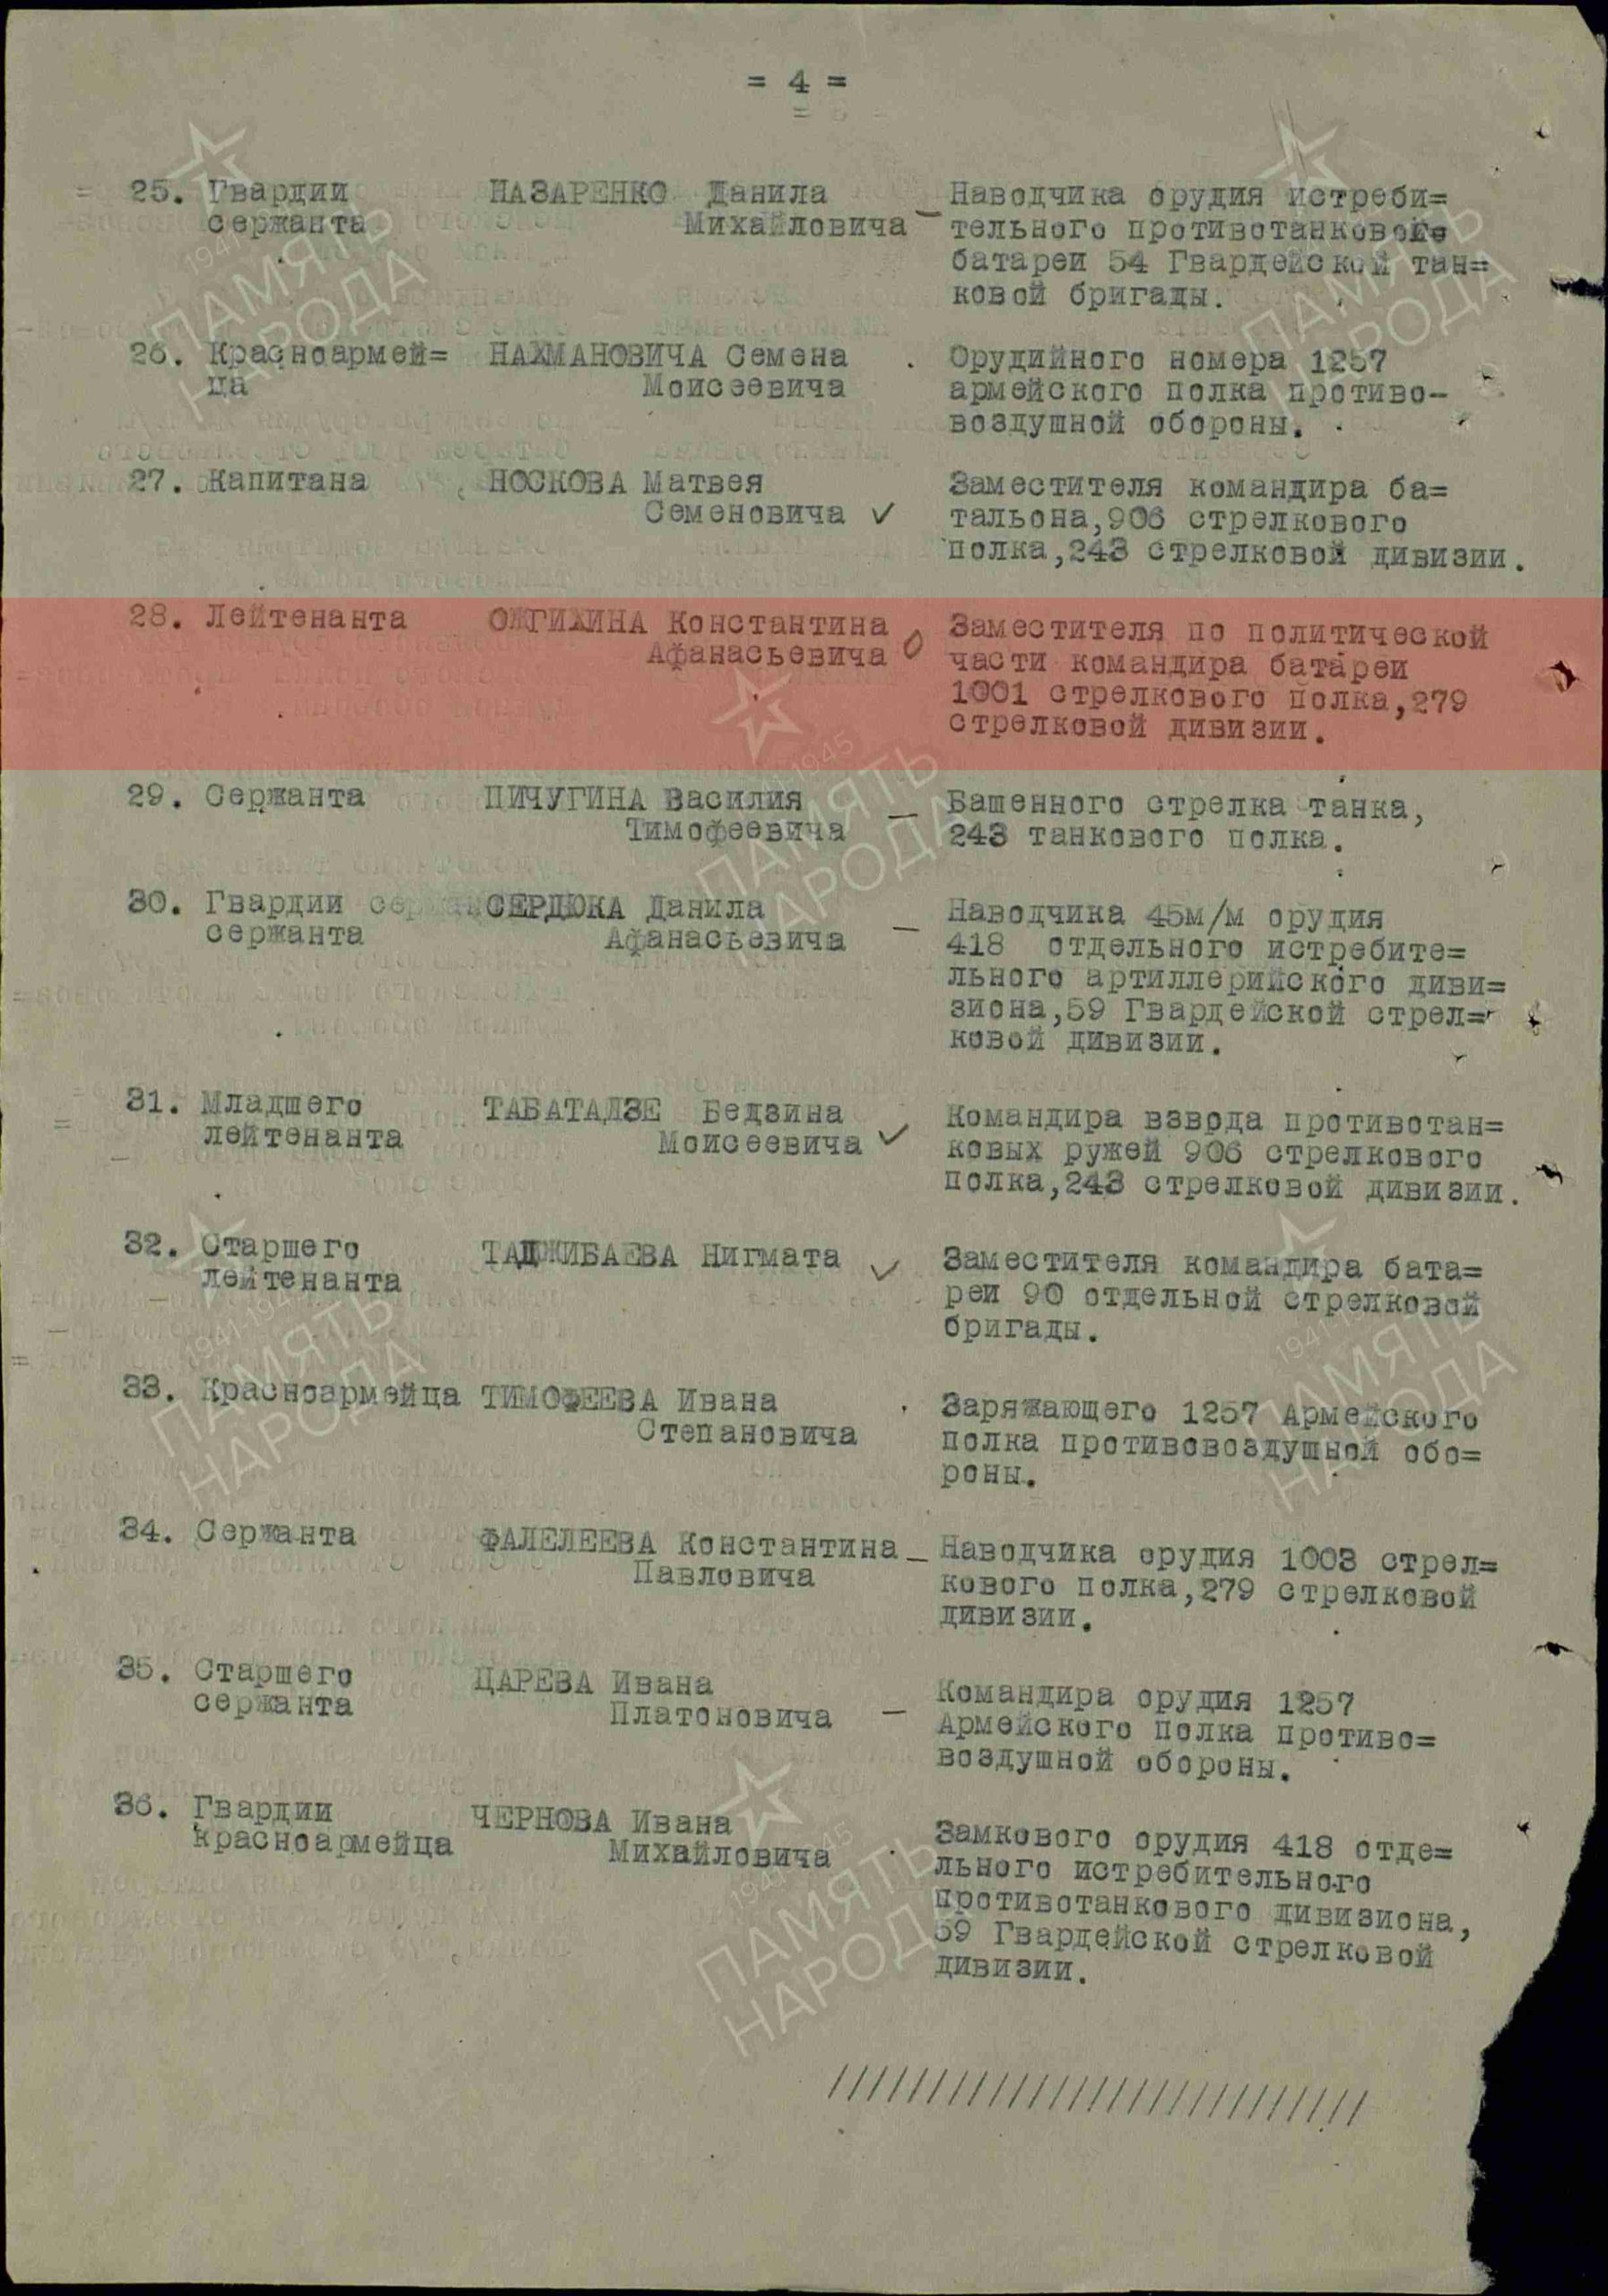 1. Лист приказа о награждении (строка в наградном списке).  Орден Отечественной войны II степени